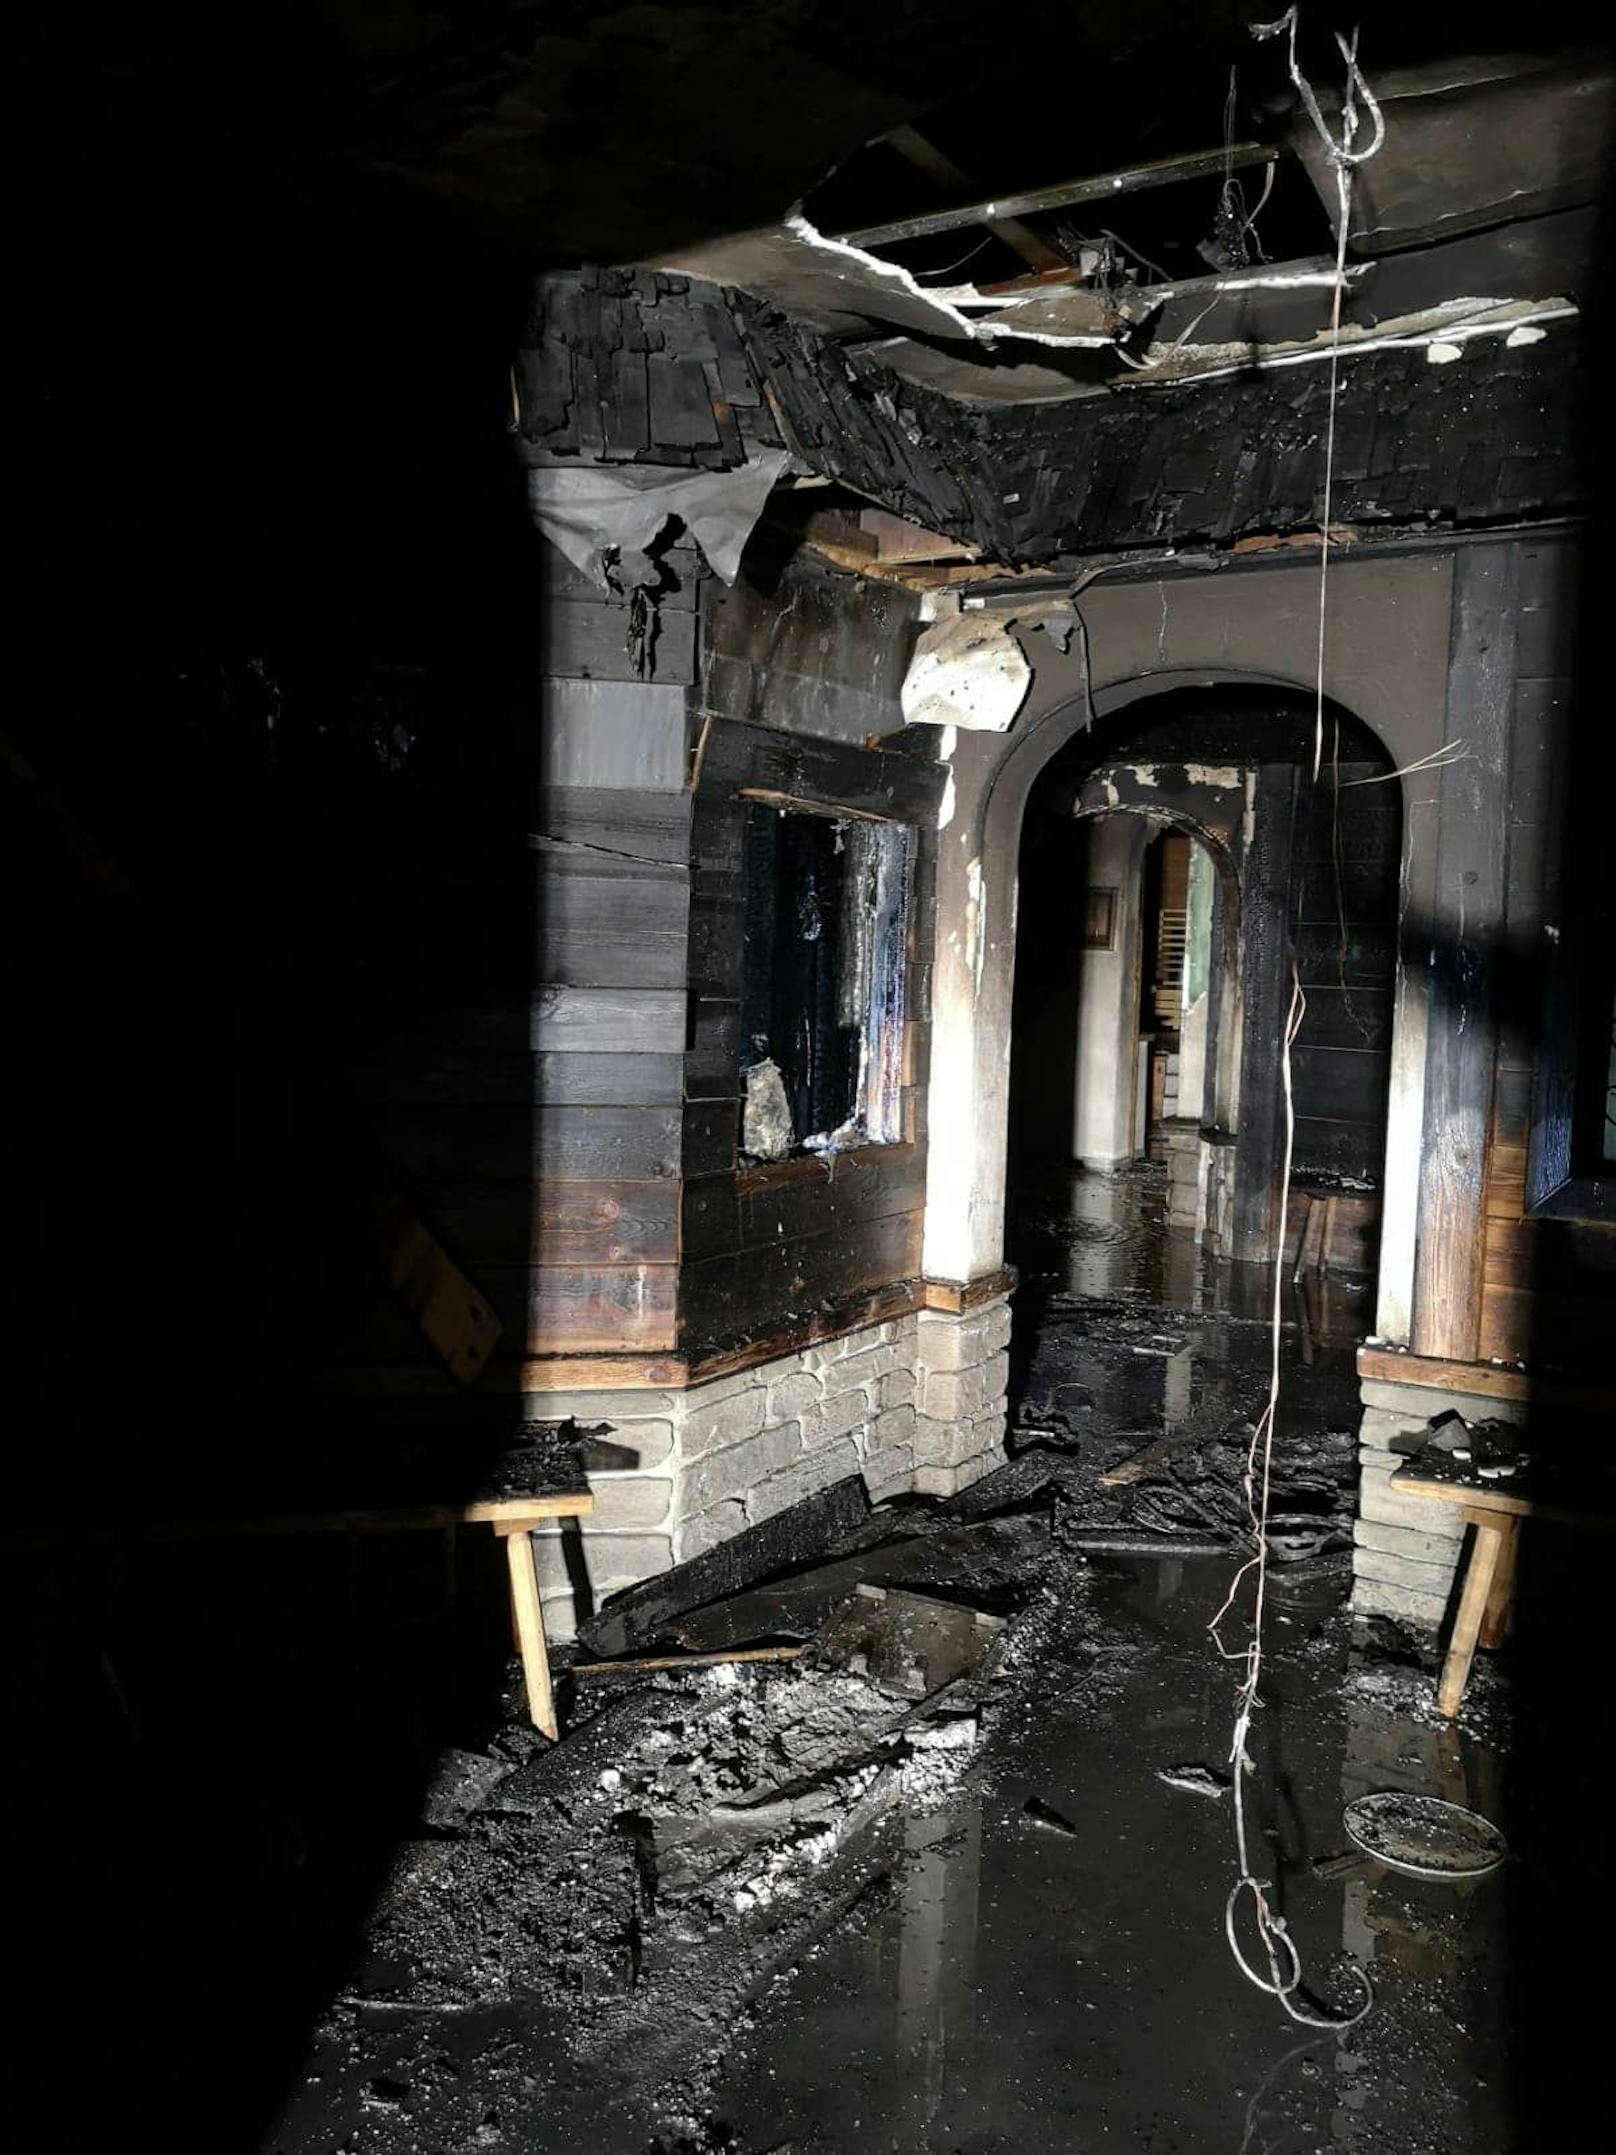 Am 13.03.2022, um 00:46 Uhr kam es in Bad Häring zu einem Brand in einer Hotelsauna.